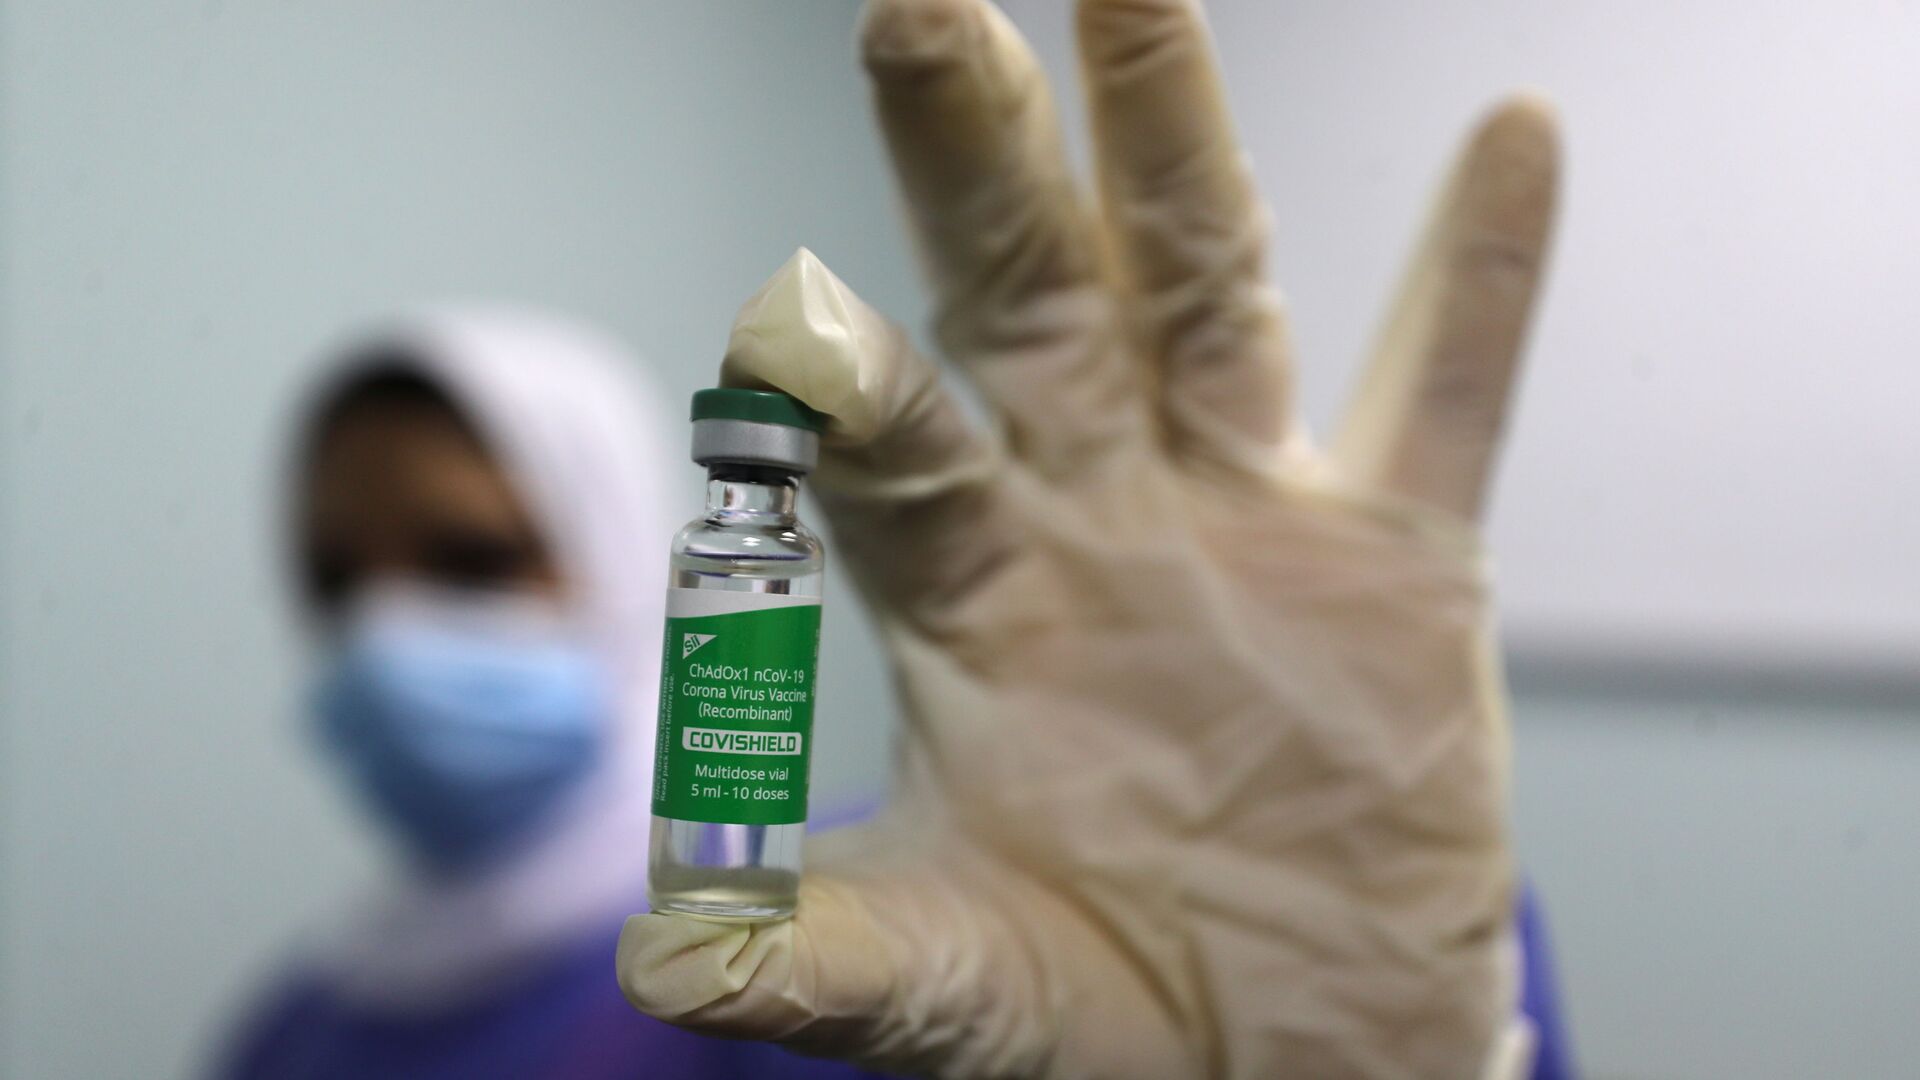 بدء تطعيم واسع النطاق في مصر ضد فيروس كورونا (كوفيد-19)، القاهرة، 4 مارس 2021 - سبوتنيك عربي, 1920, 23.10.2021